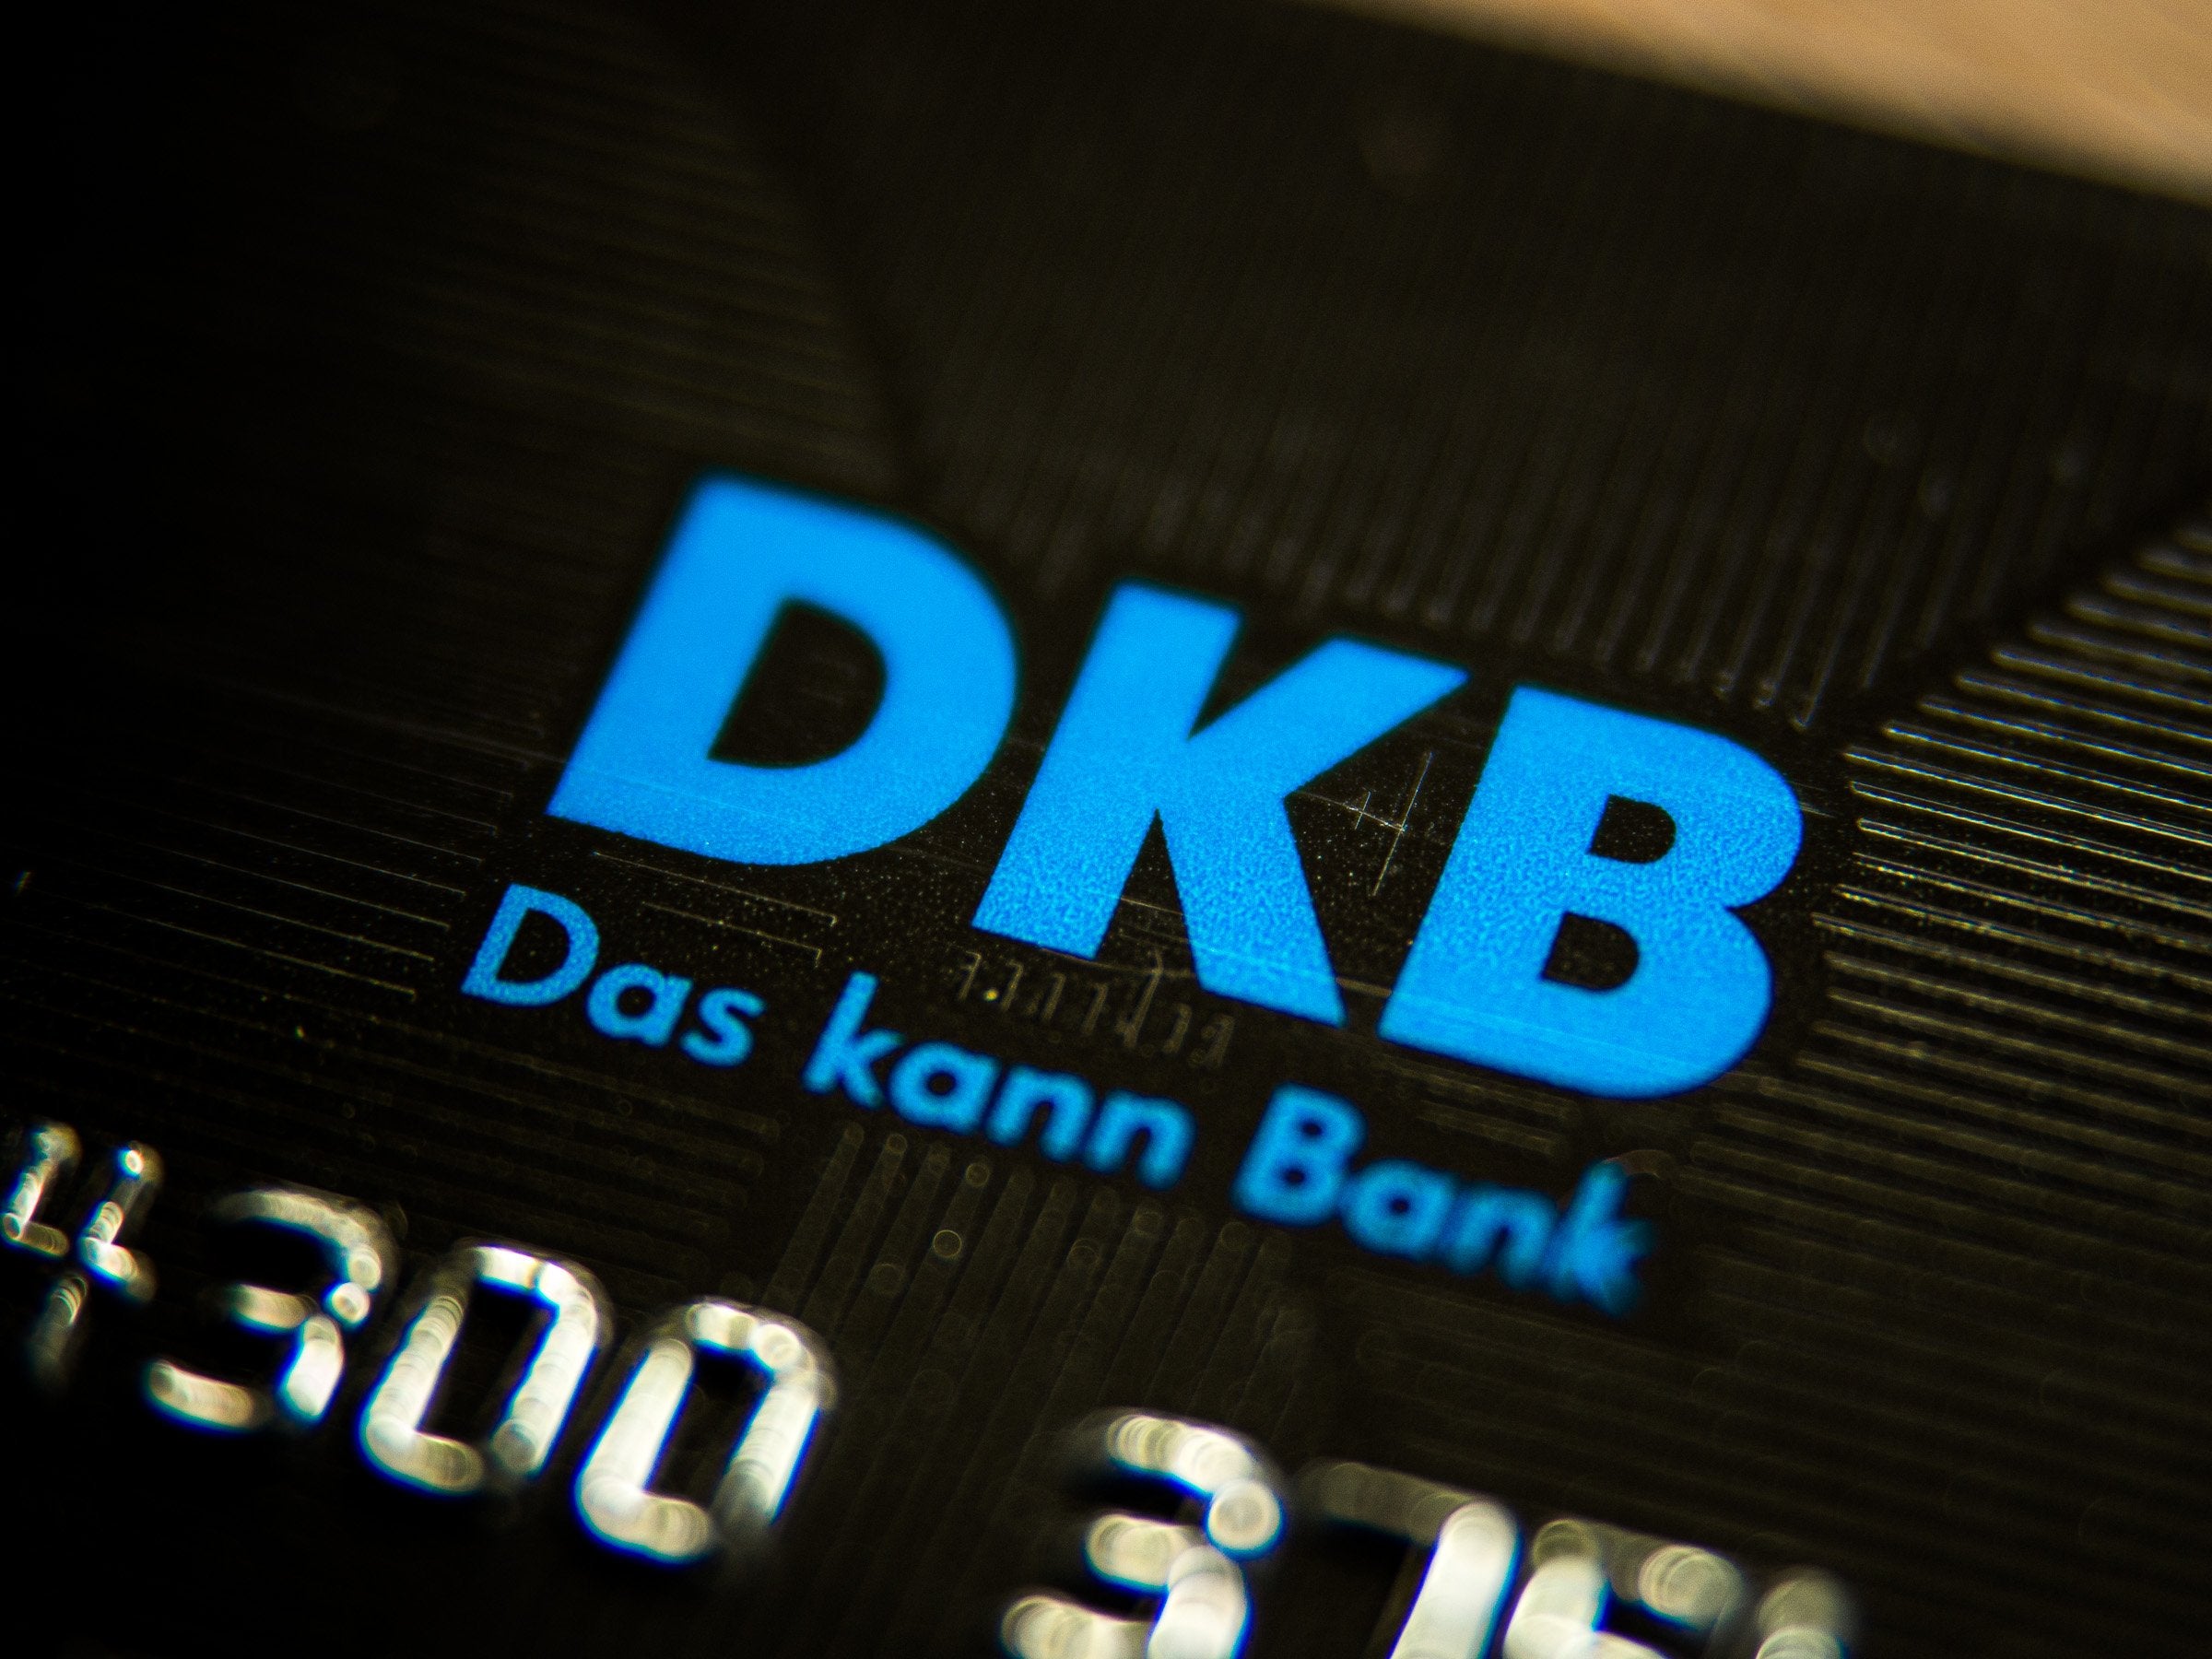 #DKB: Die Verbraucherzentrale warnt – doch das Problem betrifft alle Banken